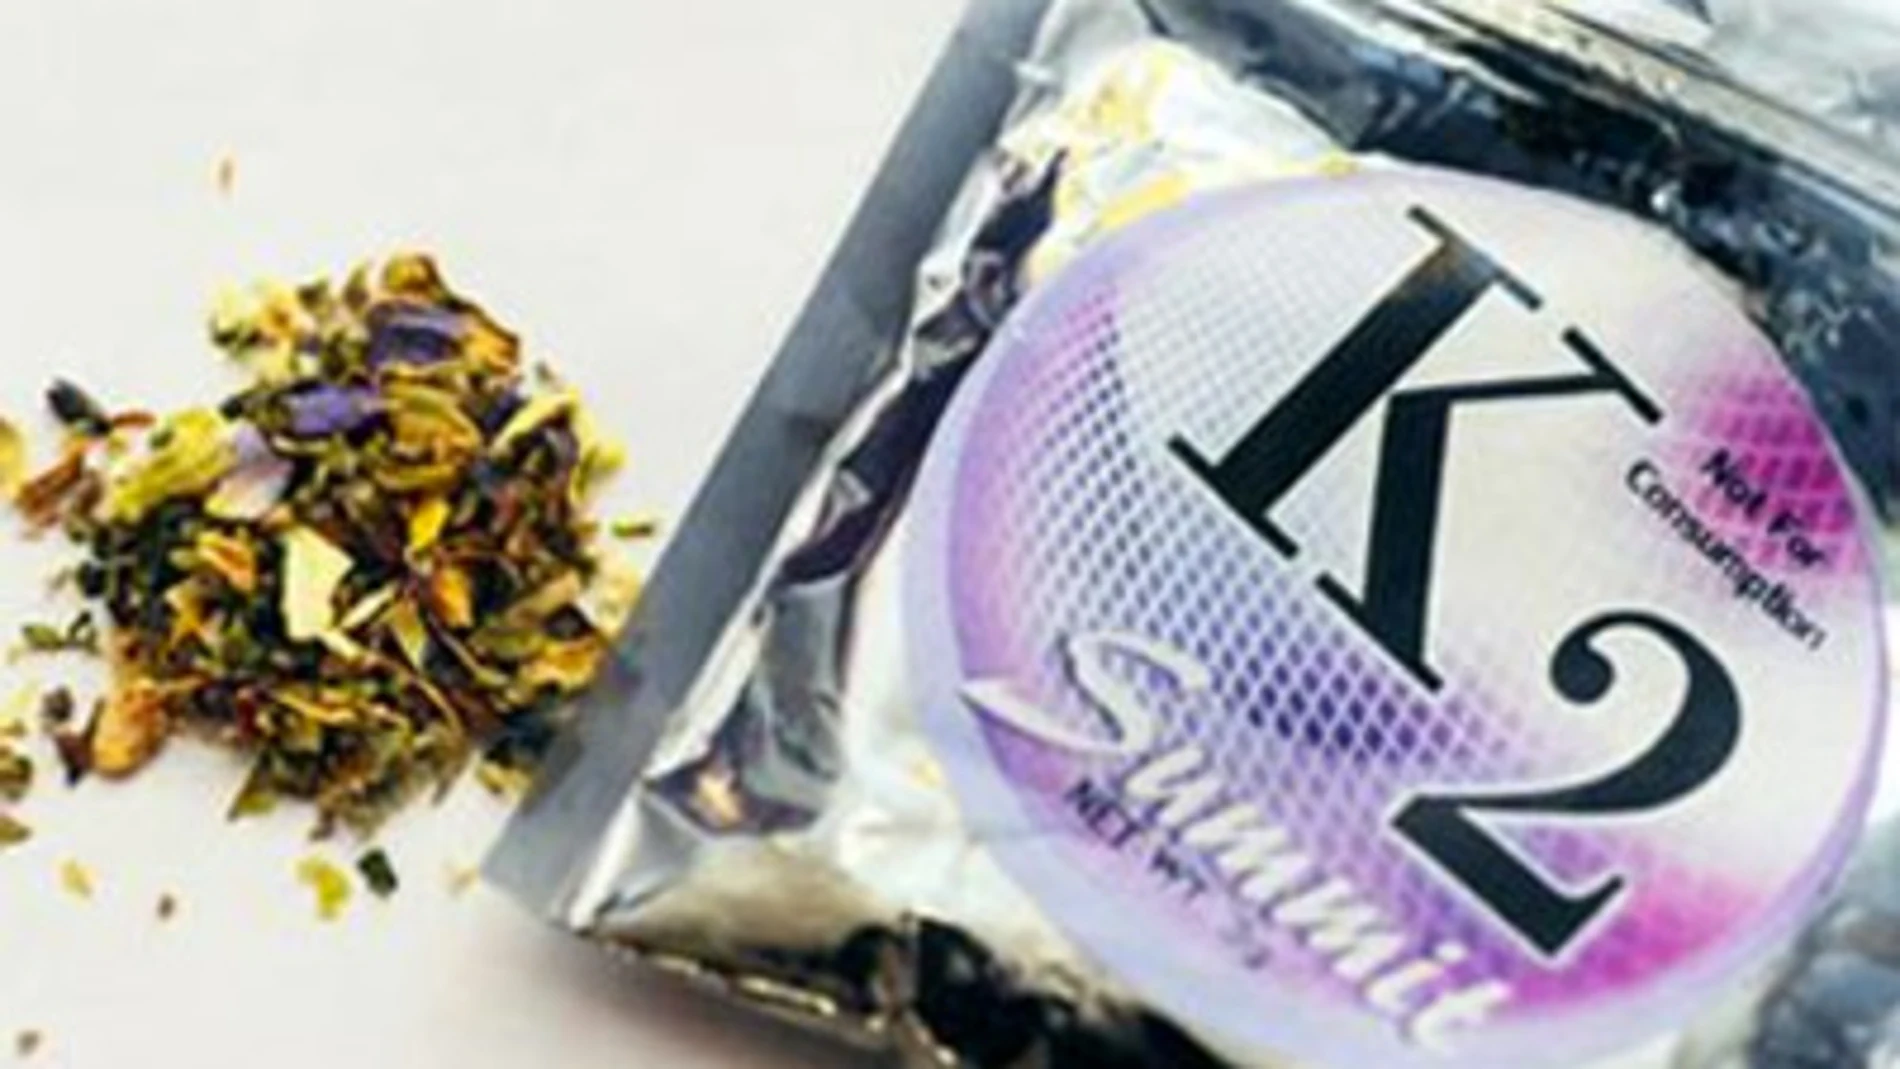 Imagen del K2, una marca popular de Spice